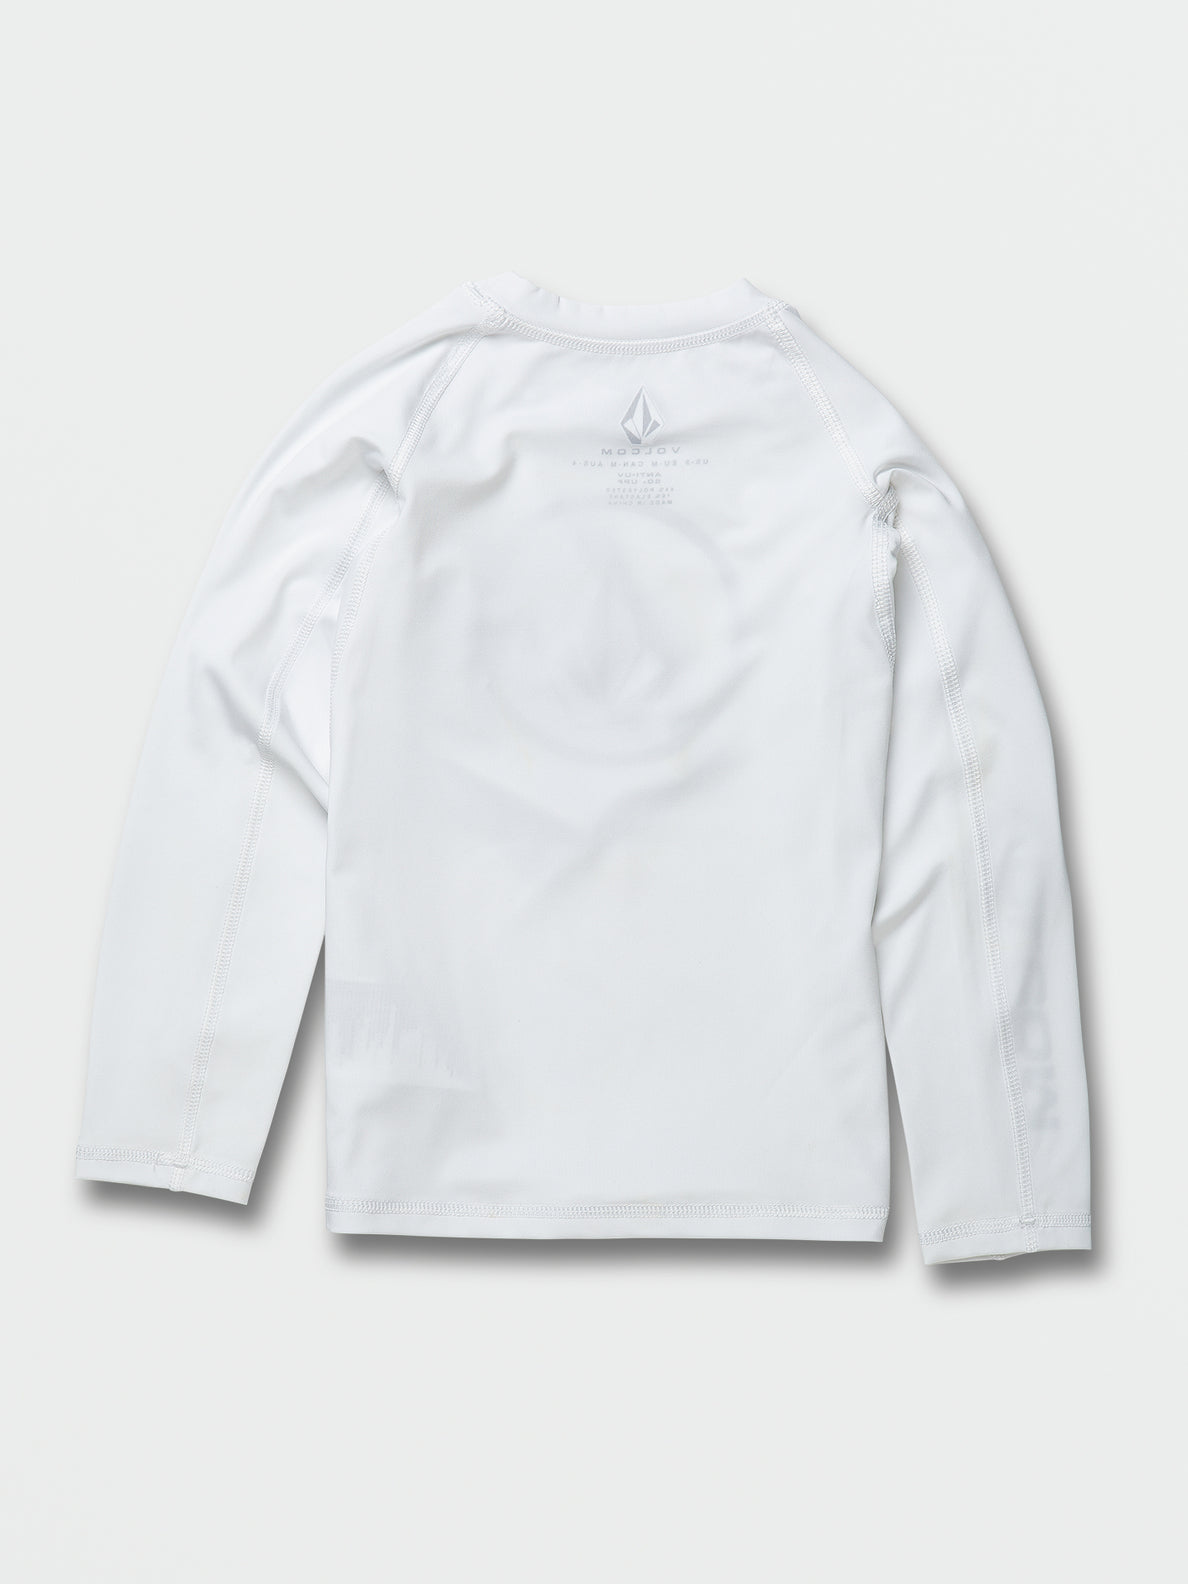 Little Boys Lido Solid Long Sleeve UPF 50 Rashguard - White (Y9312302_WHT) [B]